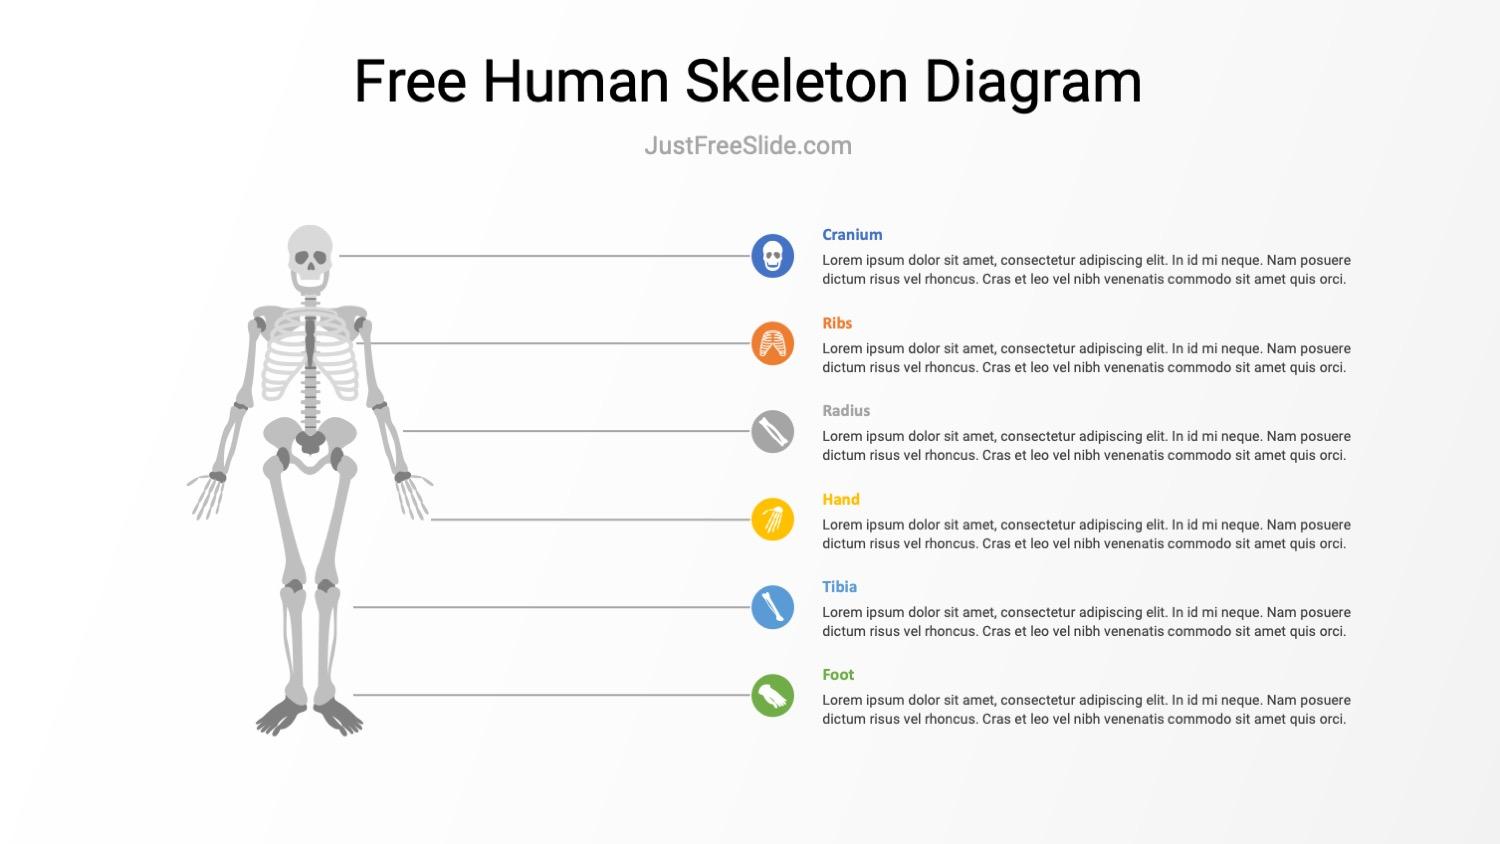 Free Human Skeleton Diagram